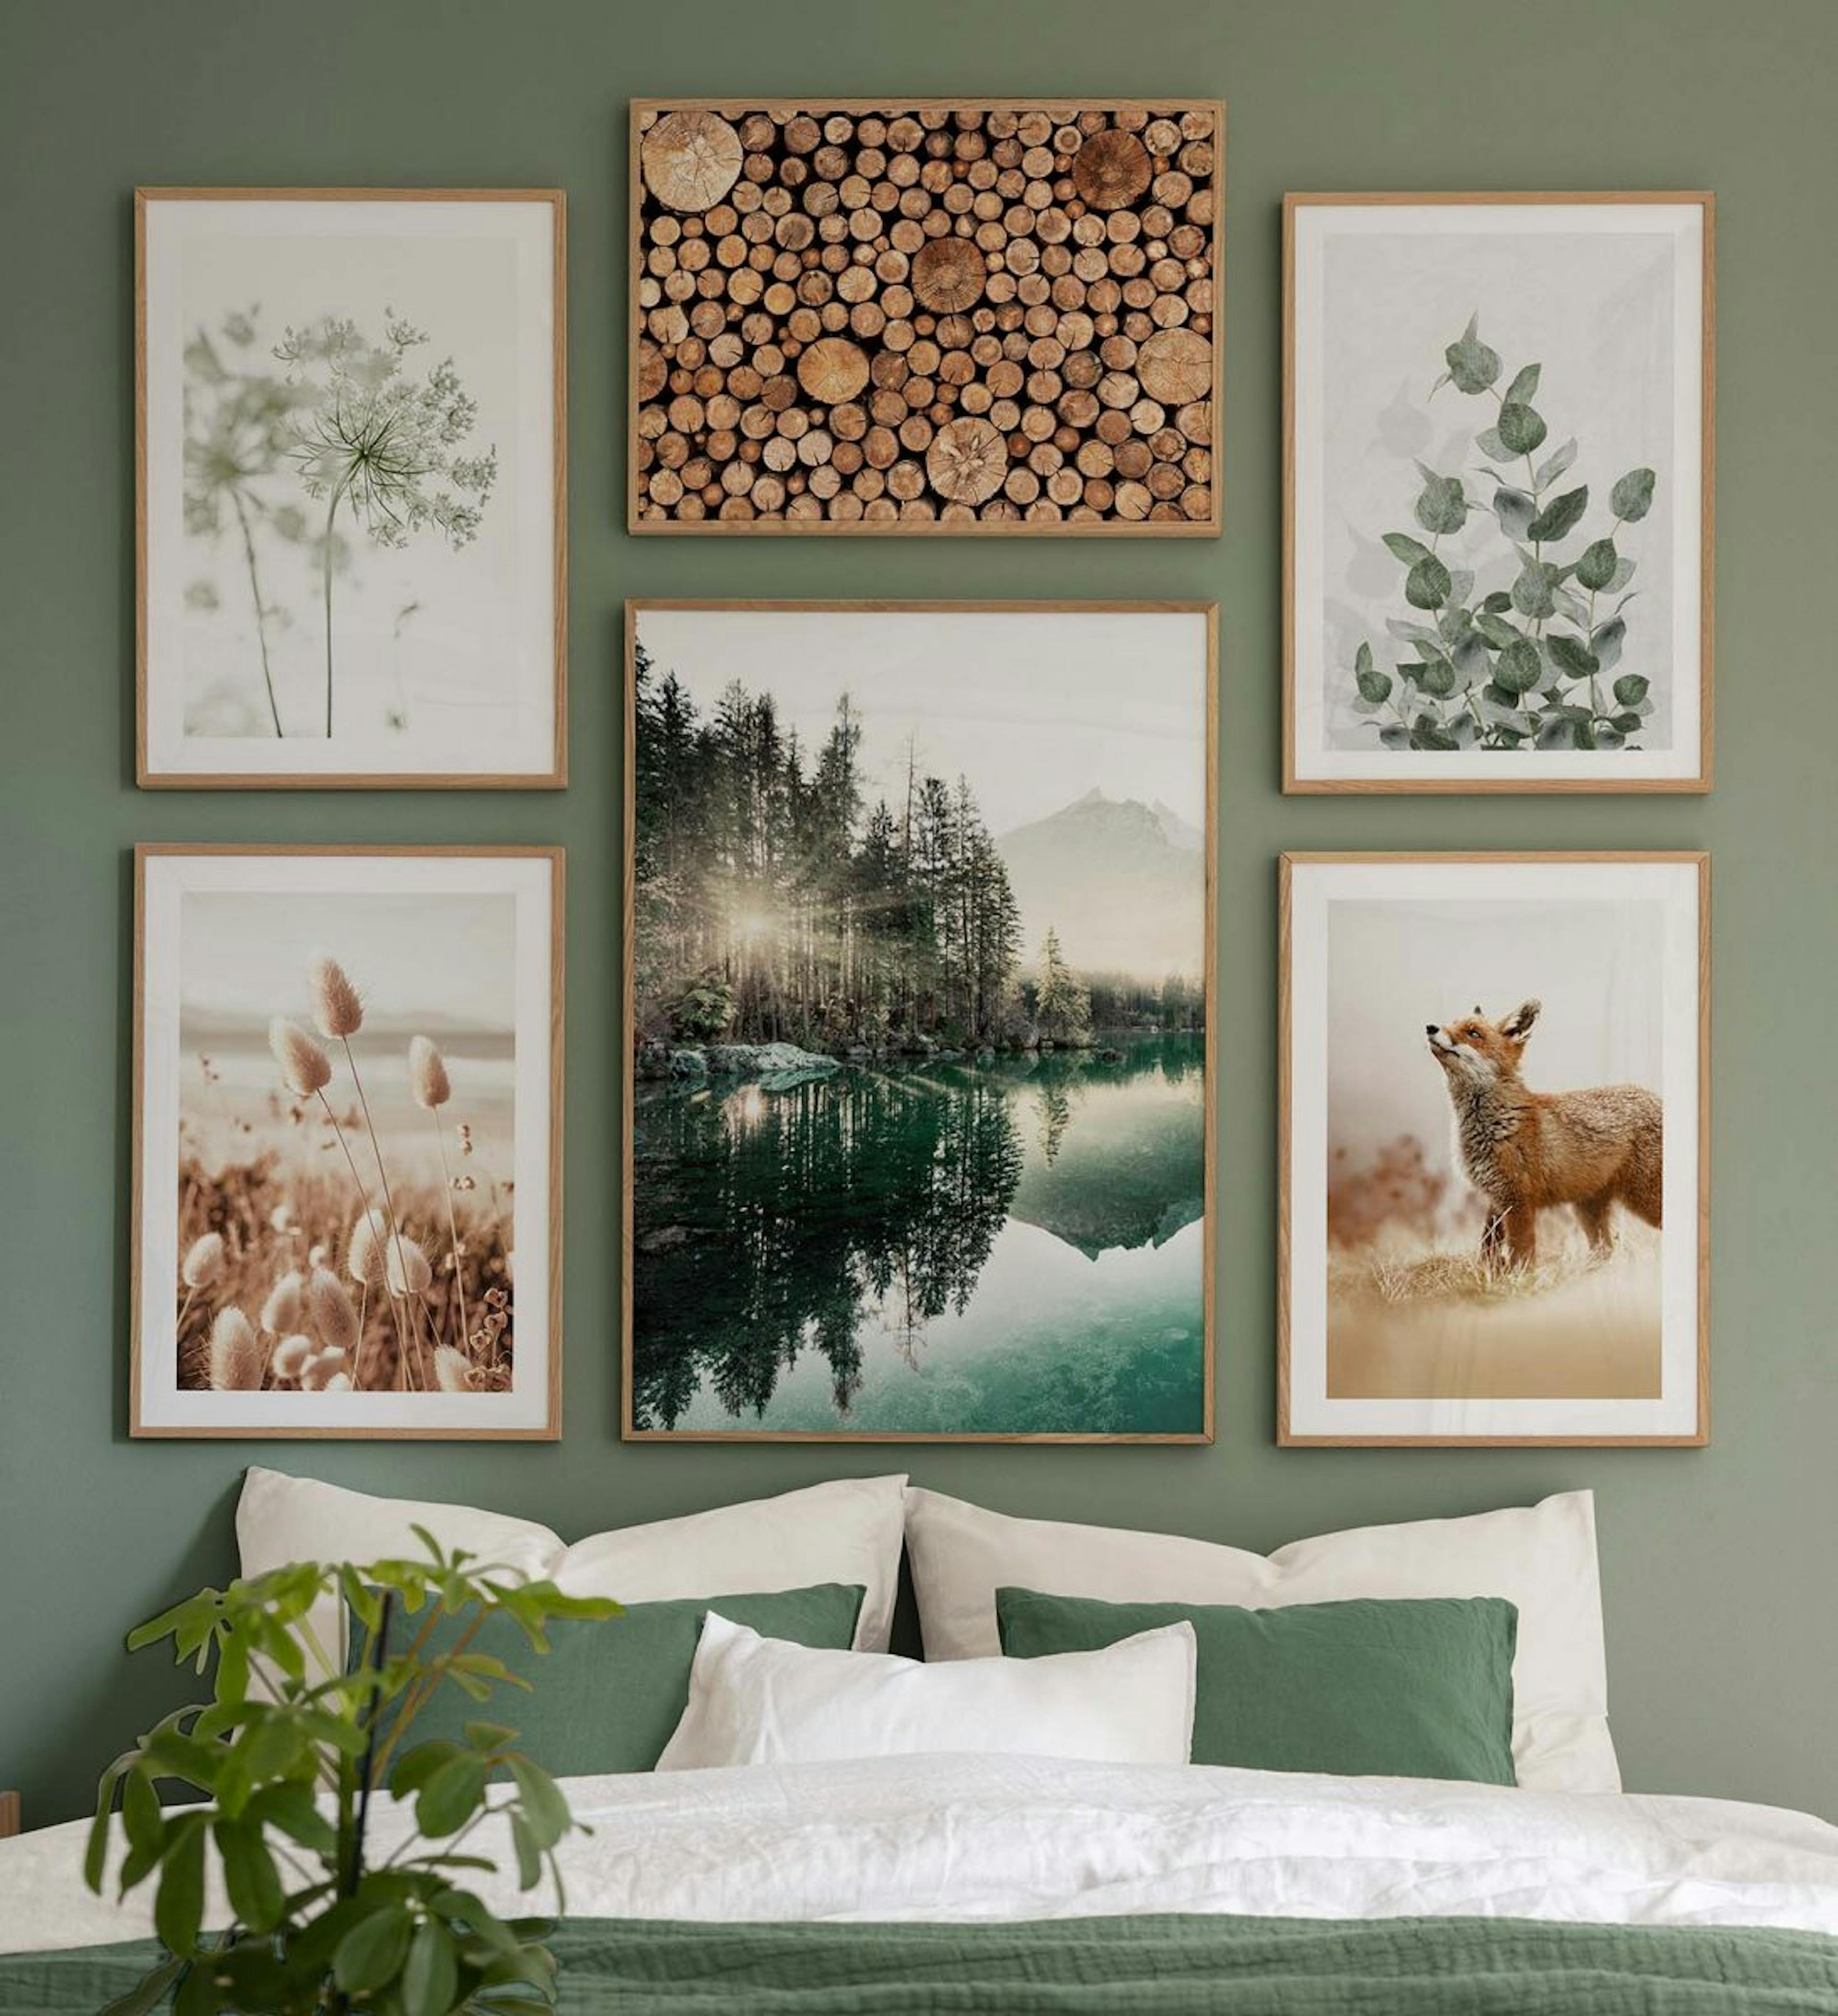 오크 프레임이 있는 침실용 풍경 사진과 애니멀 프린트가 있는 자연 그대로의 갤러리 벽